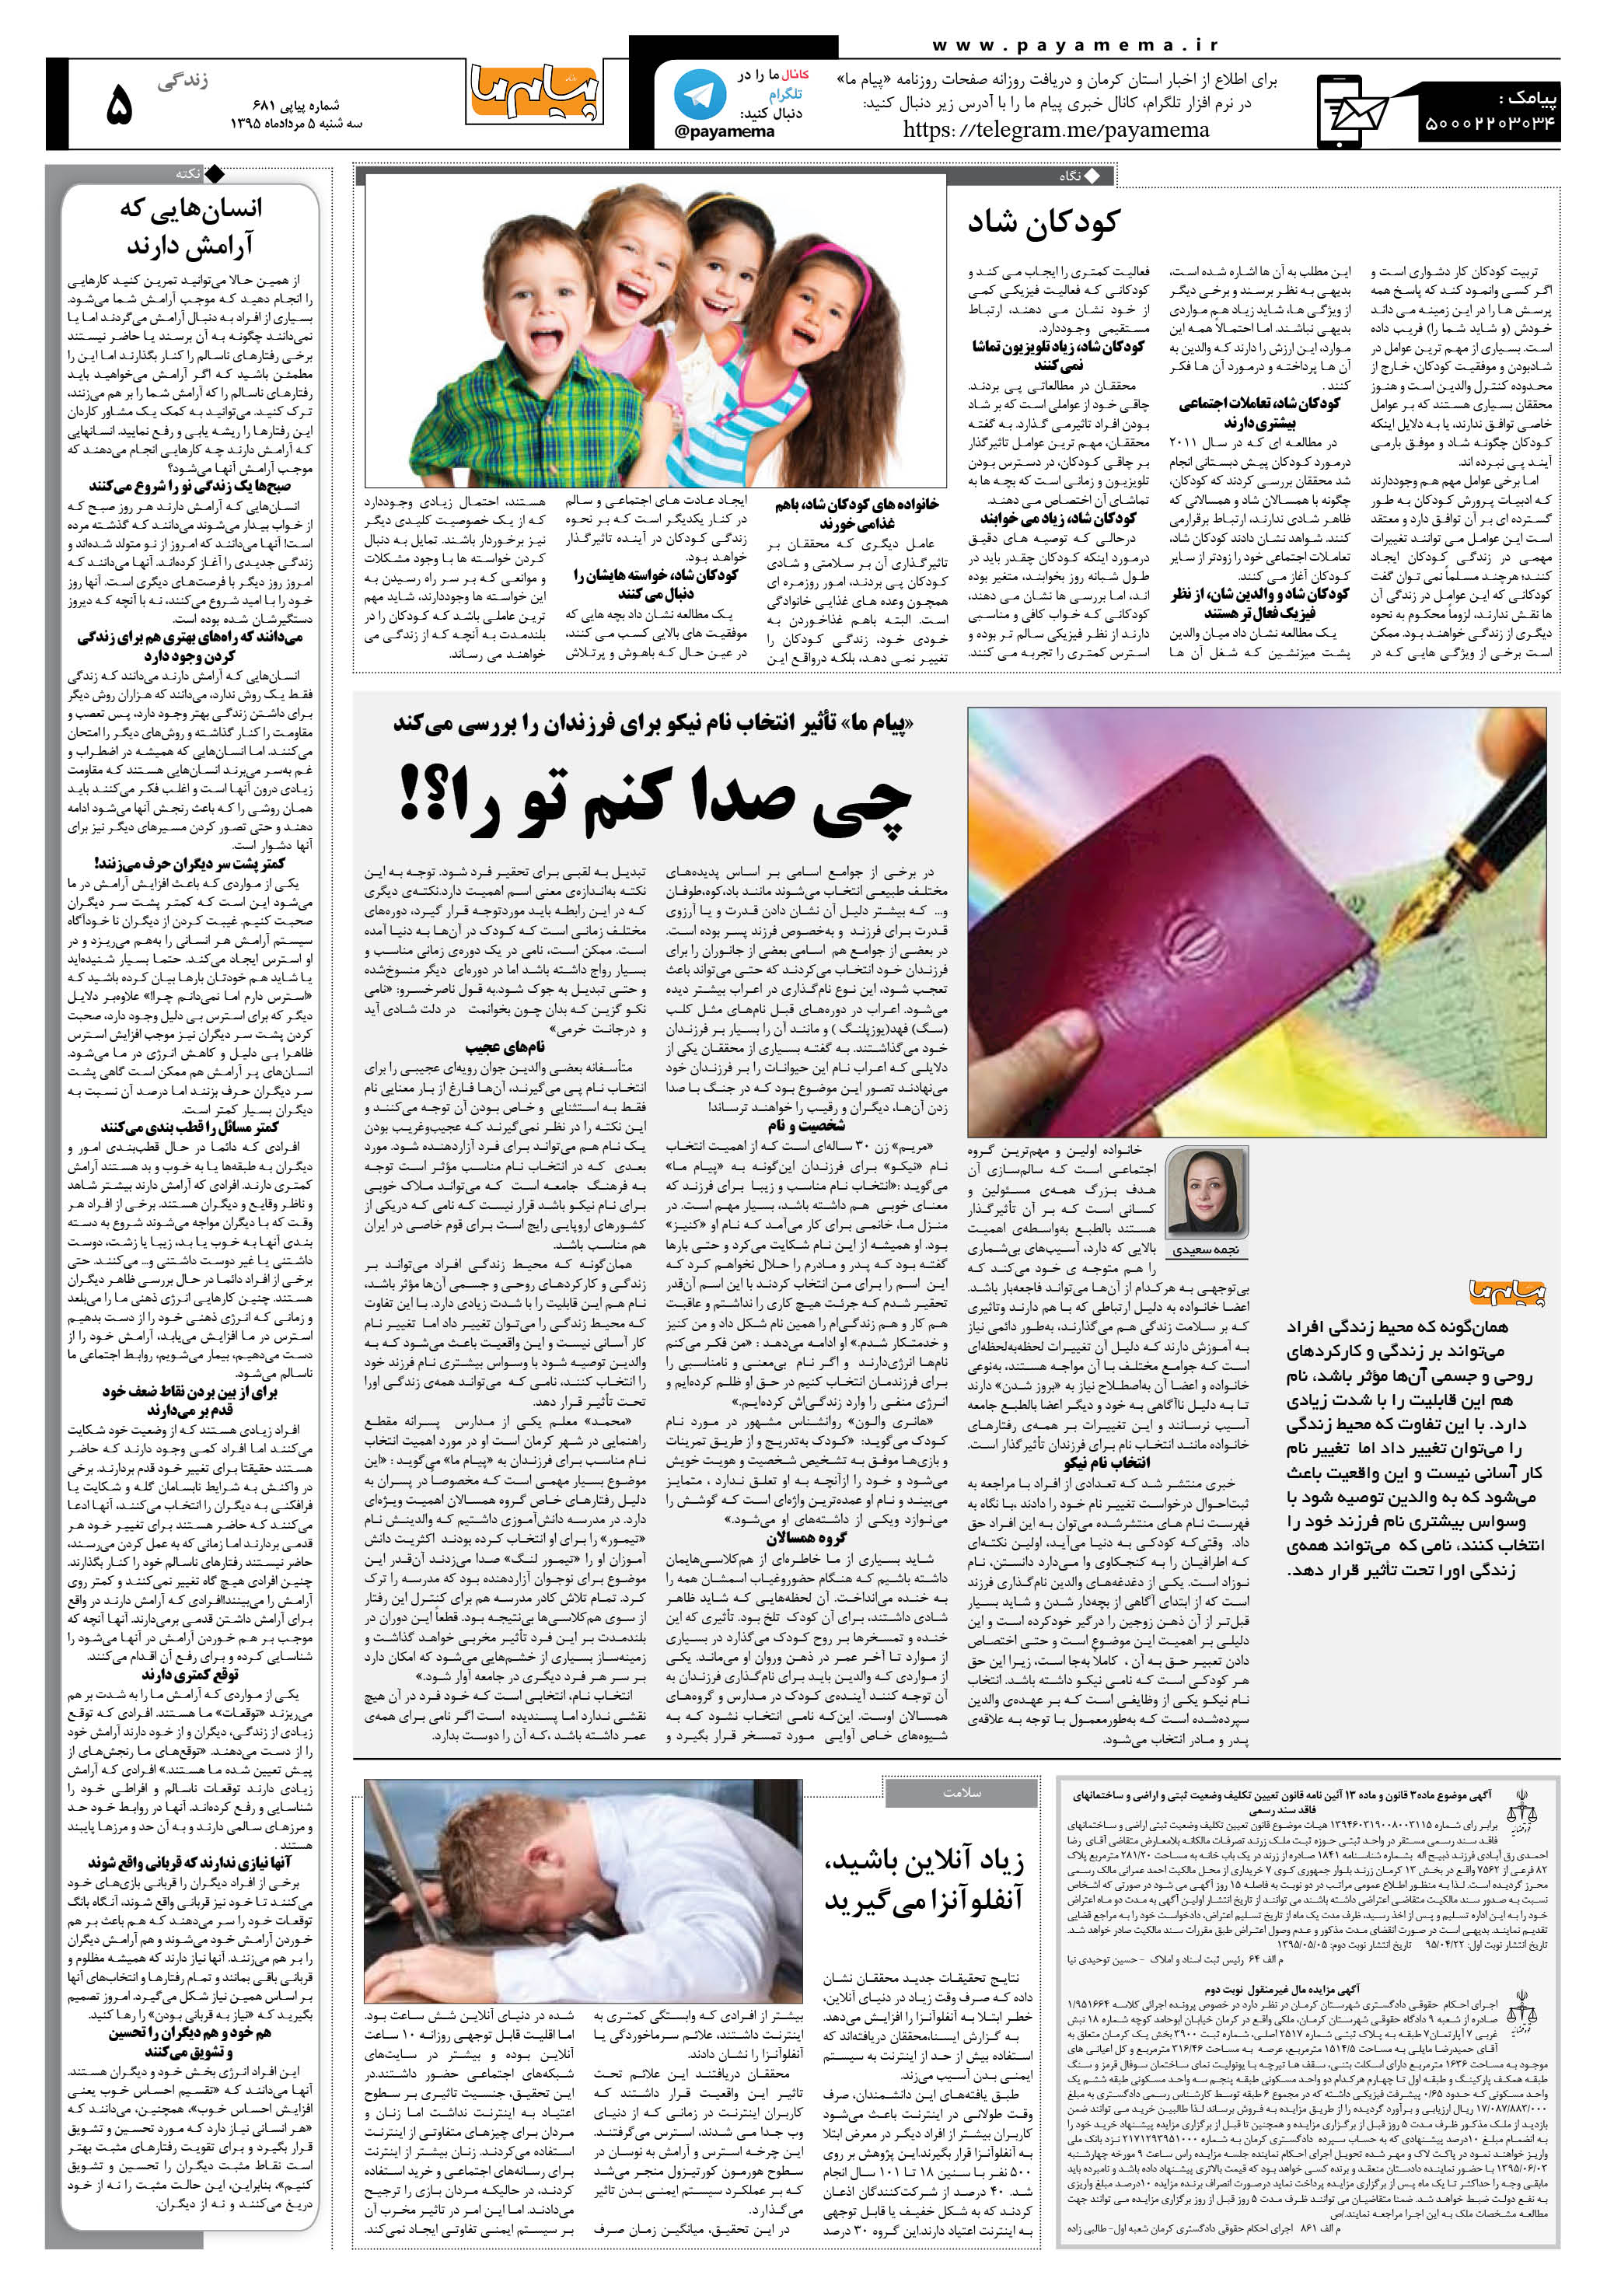 صفحه زندگی شماره 681 روزنامه پیام ما